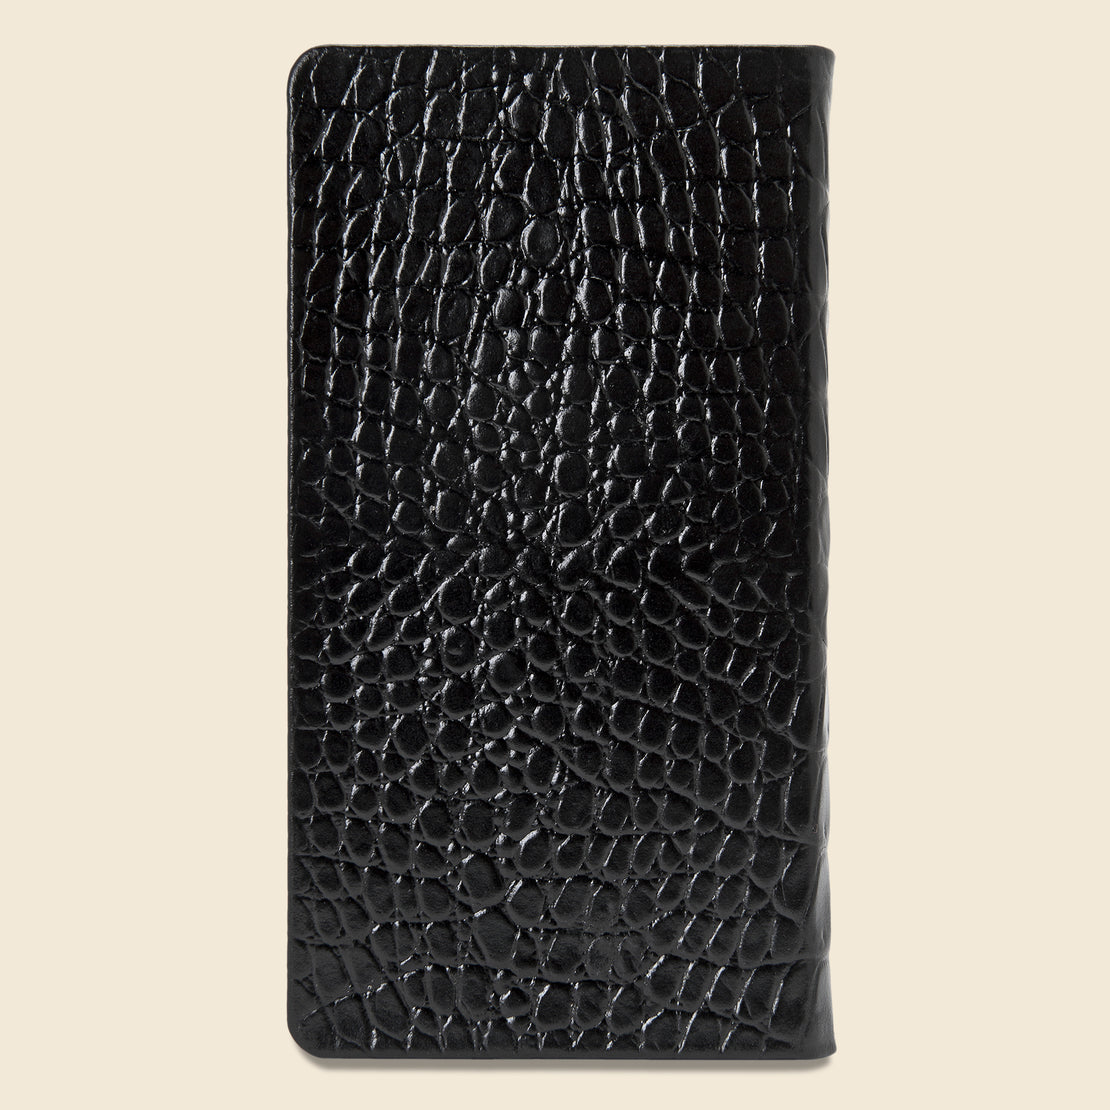 2021 Embossed Leather Pocket Datebook - Black Crocodile